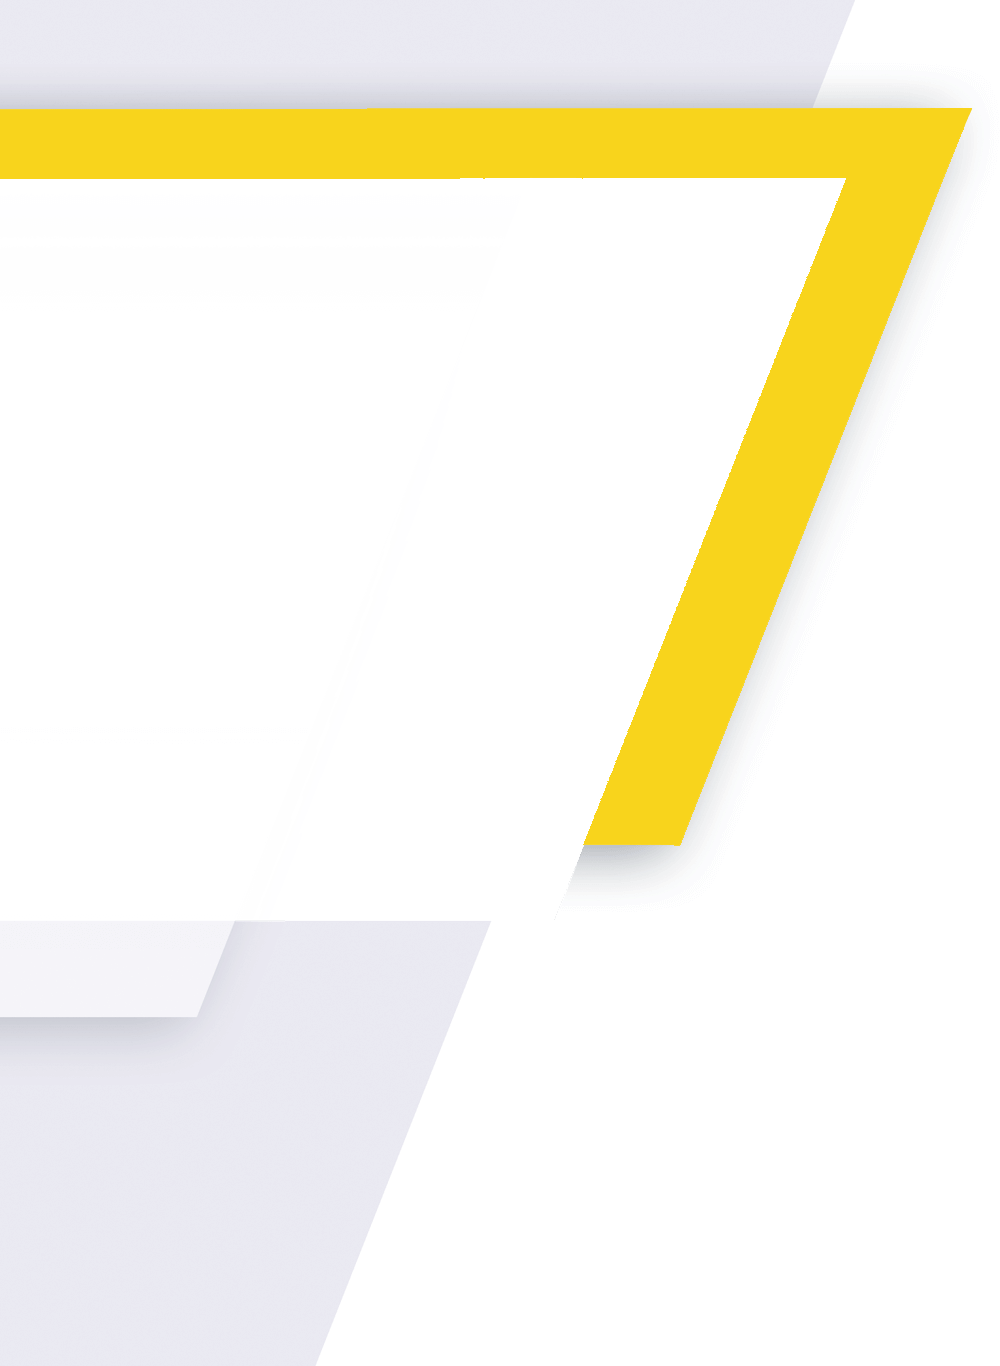 Hintergrund trasnparent gelb grau